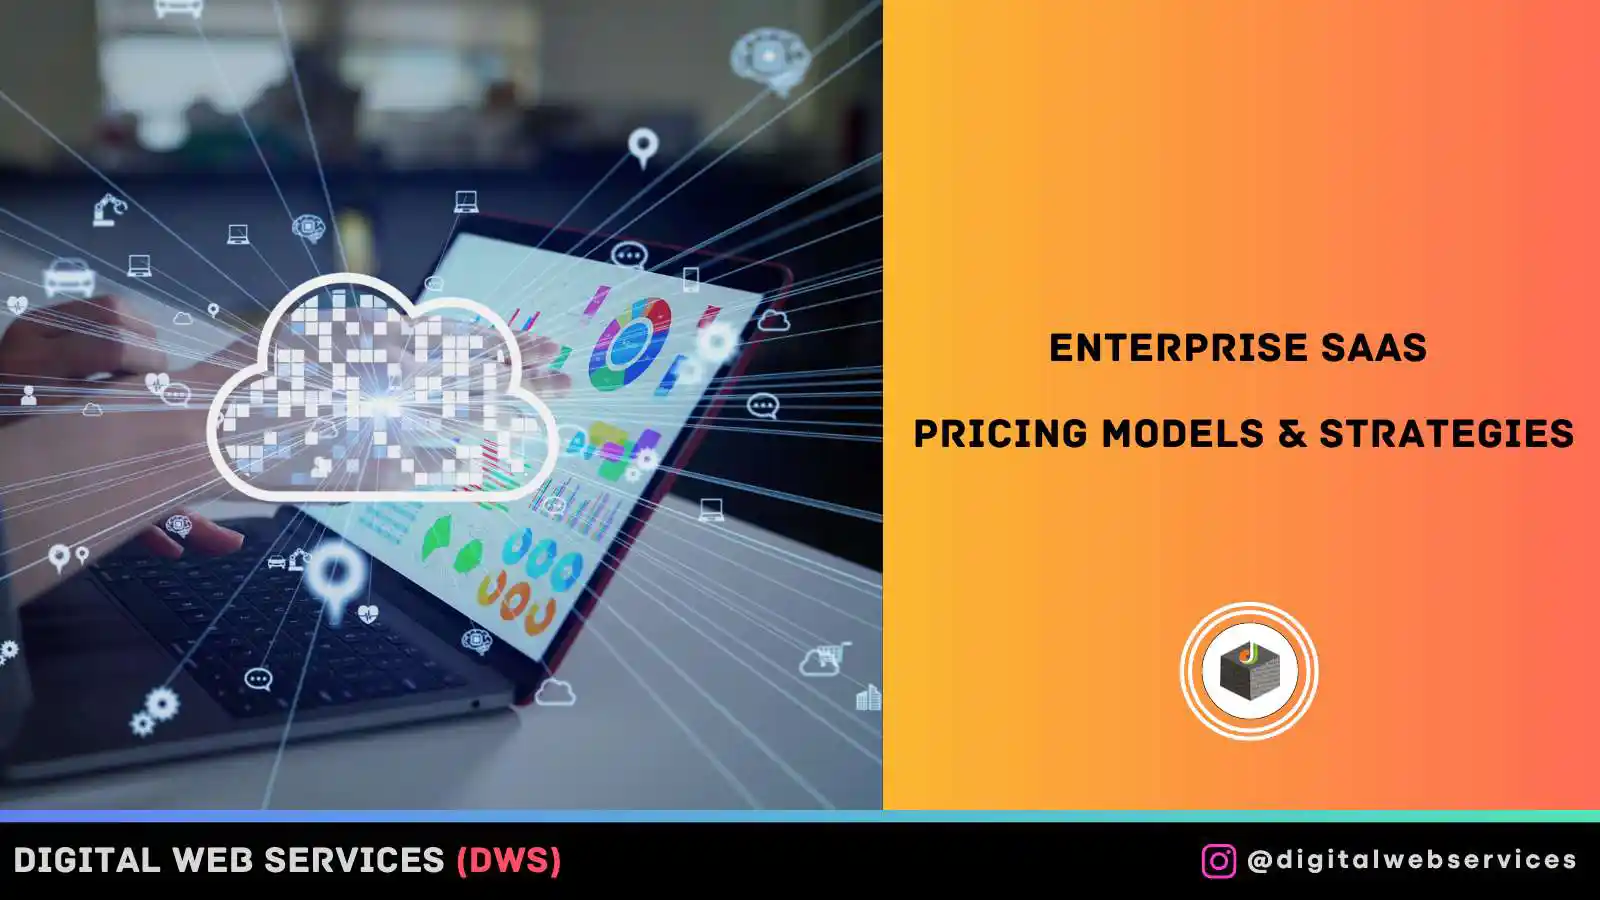 Enterprise SaaS Pricing Models & Strategies